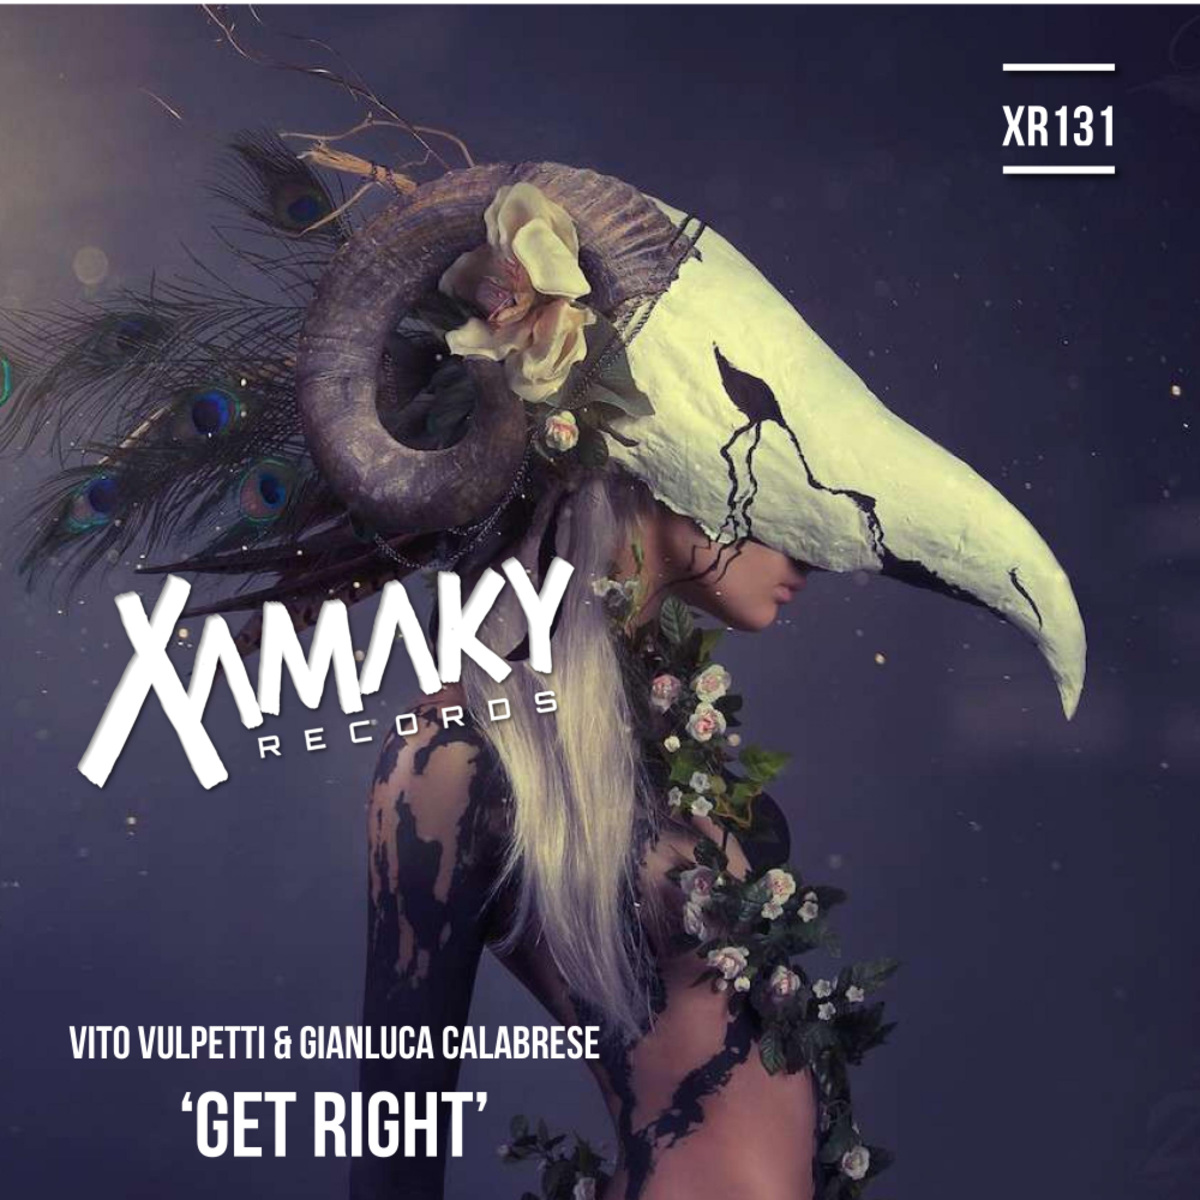 Vito Vulpetti & Gianluca Calabrese - Get Right / Xamaky Records